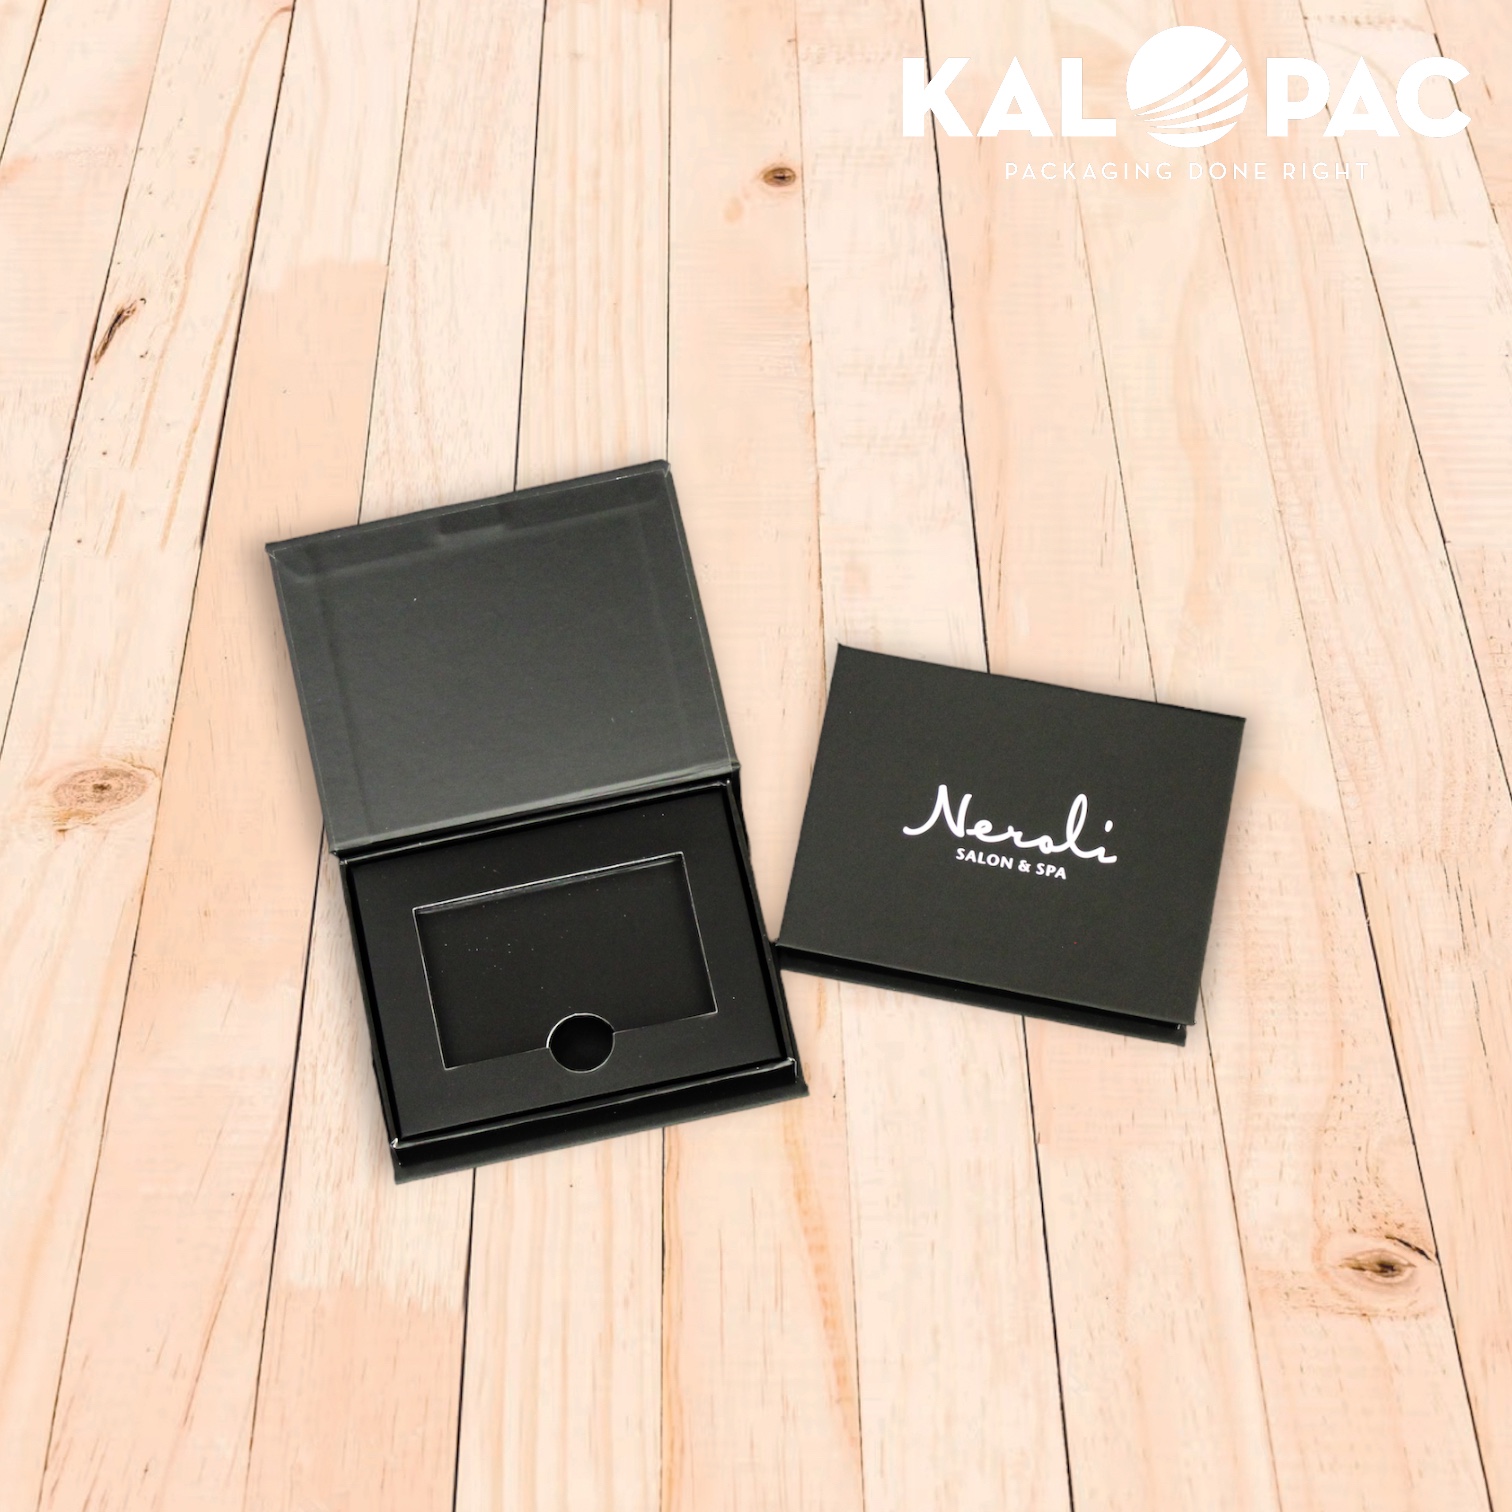 Neroli Salon & Spa Gift Card Box